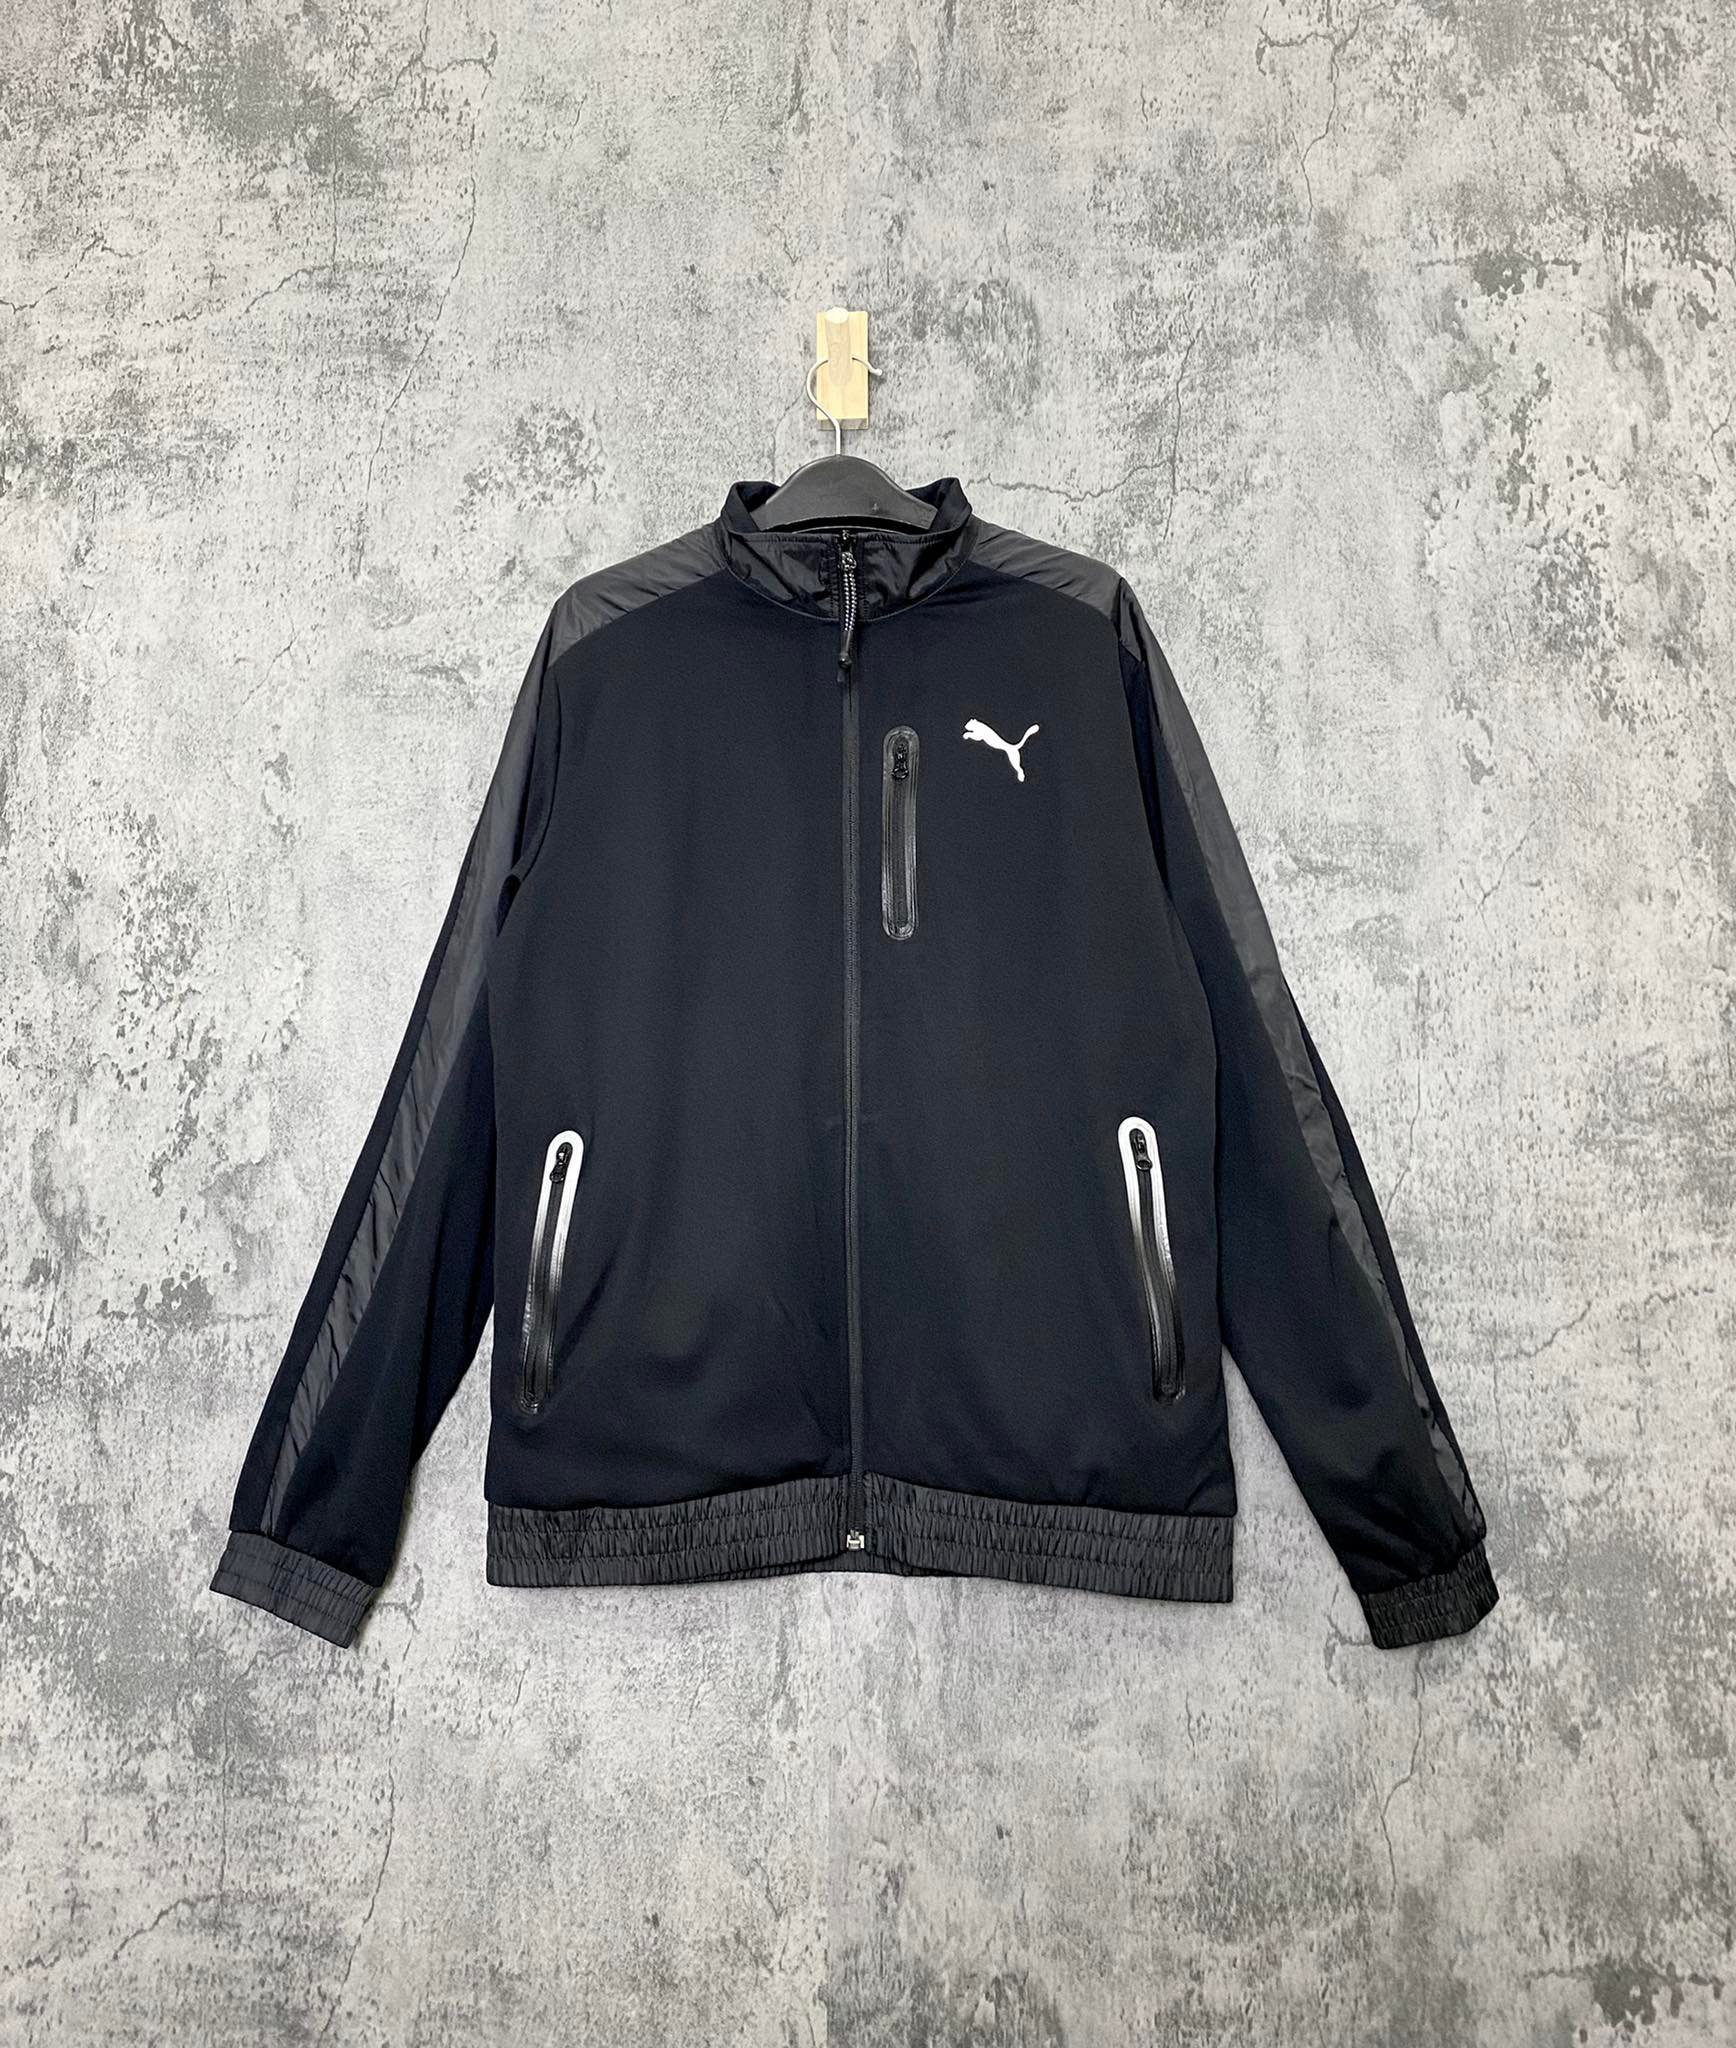 Puma | Jackets & Coats | Puma Dry Cell Running Jacket Size L | Poshmark